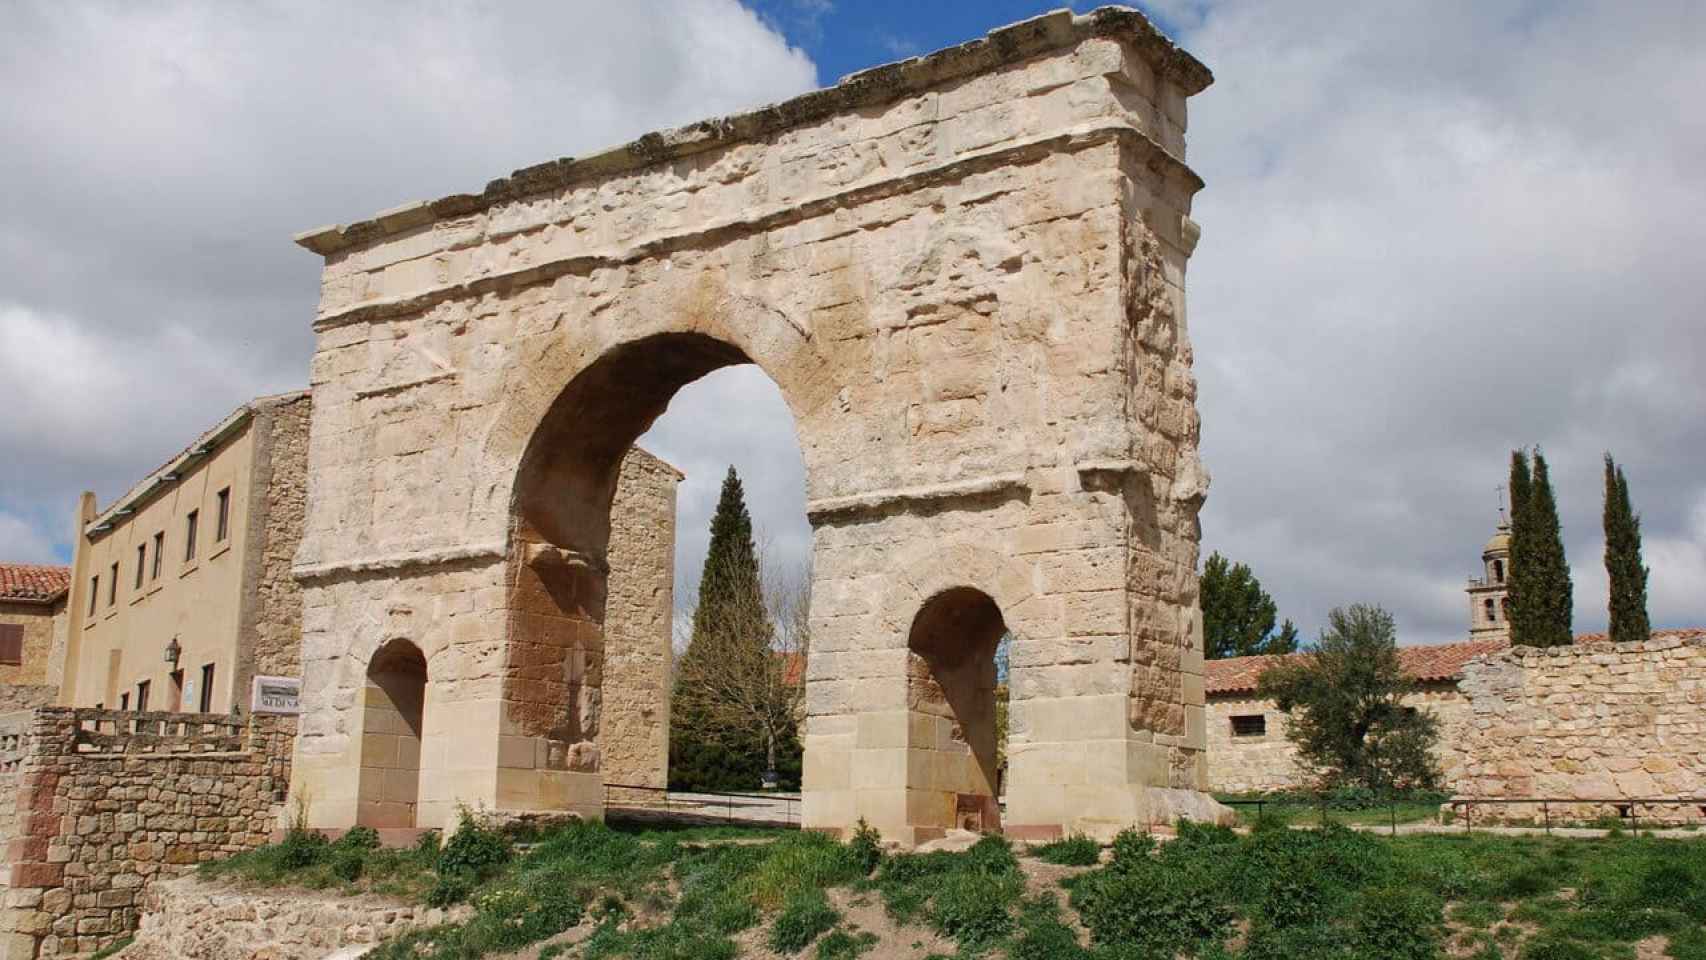 Arco de Medinaceli